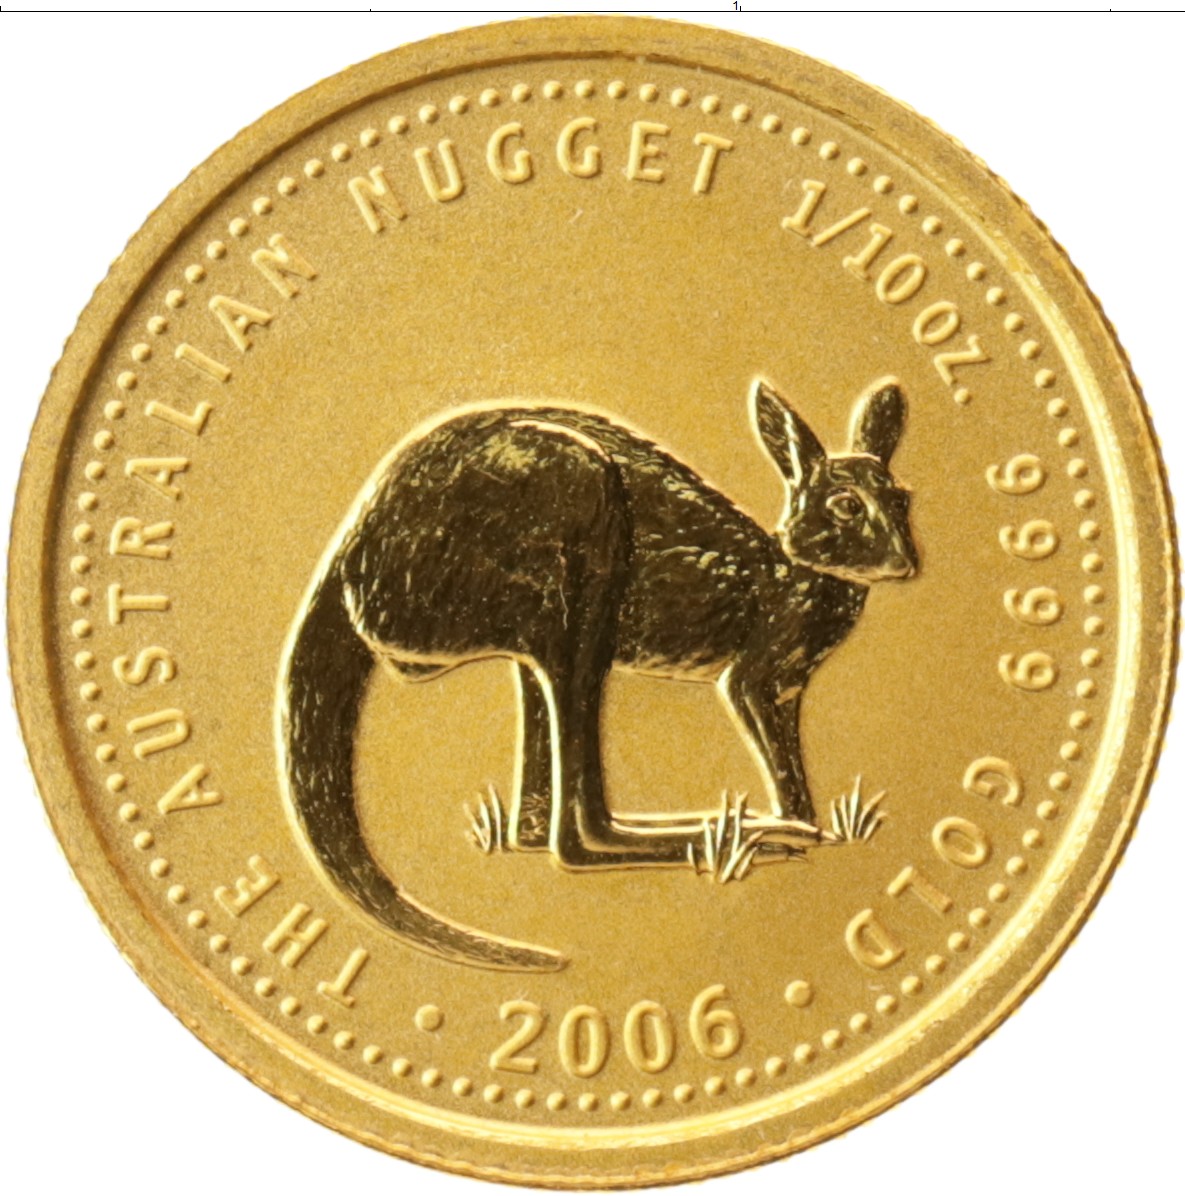 2006 долларов в рублях. Австралийский доллар 2006 года. Доллар 2006 Австралия кенгуру. Монета 50 центов Австралия 2006 года. Австралия 1 доллар кенгуру 2000 золото.